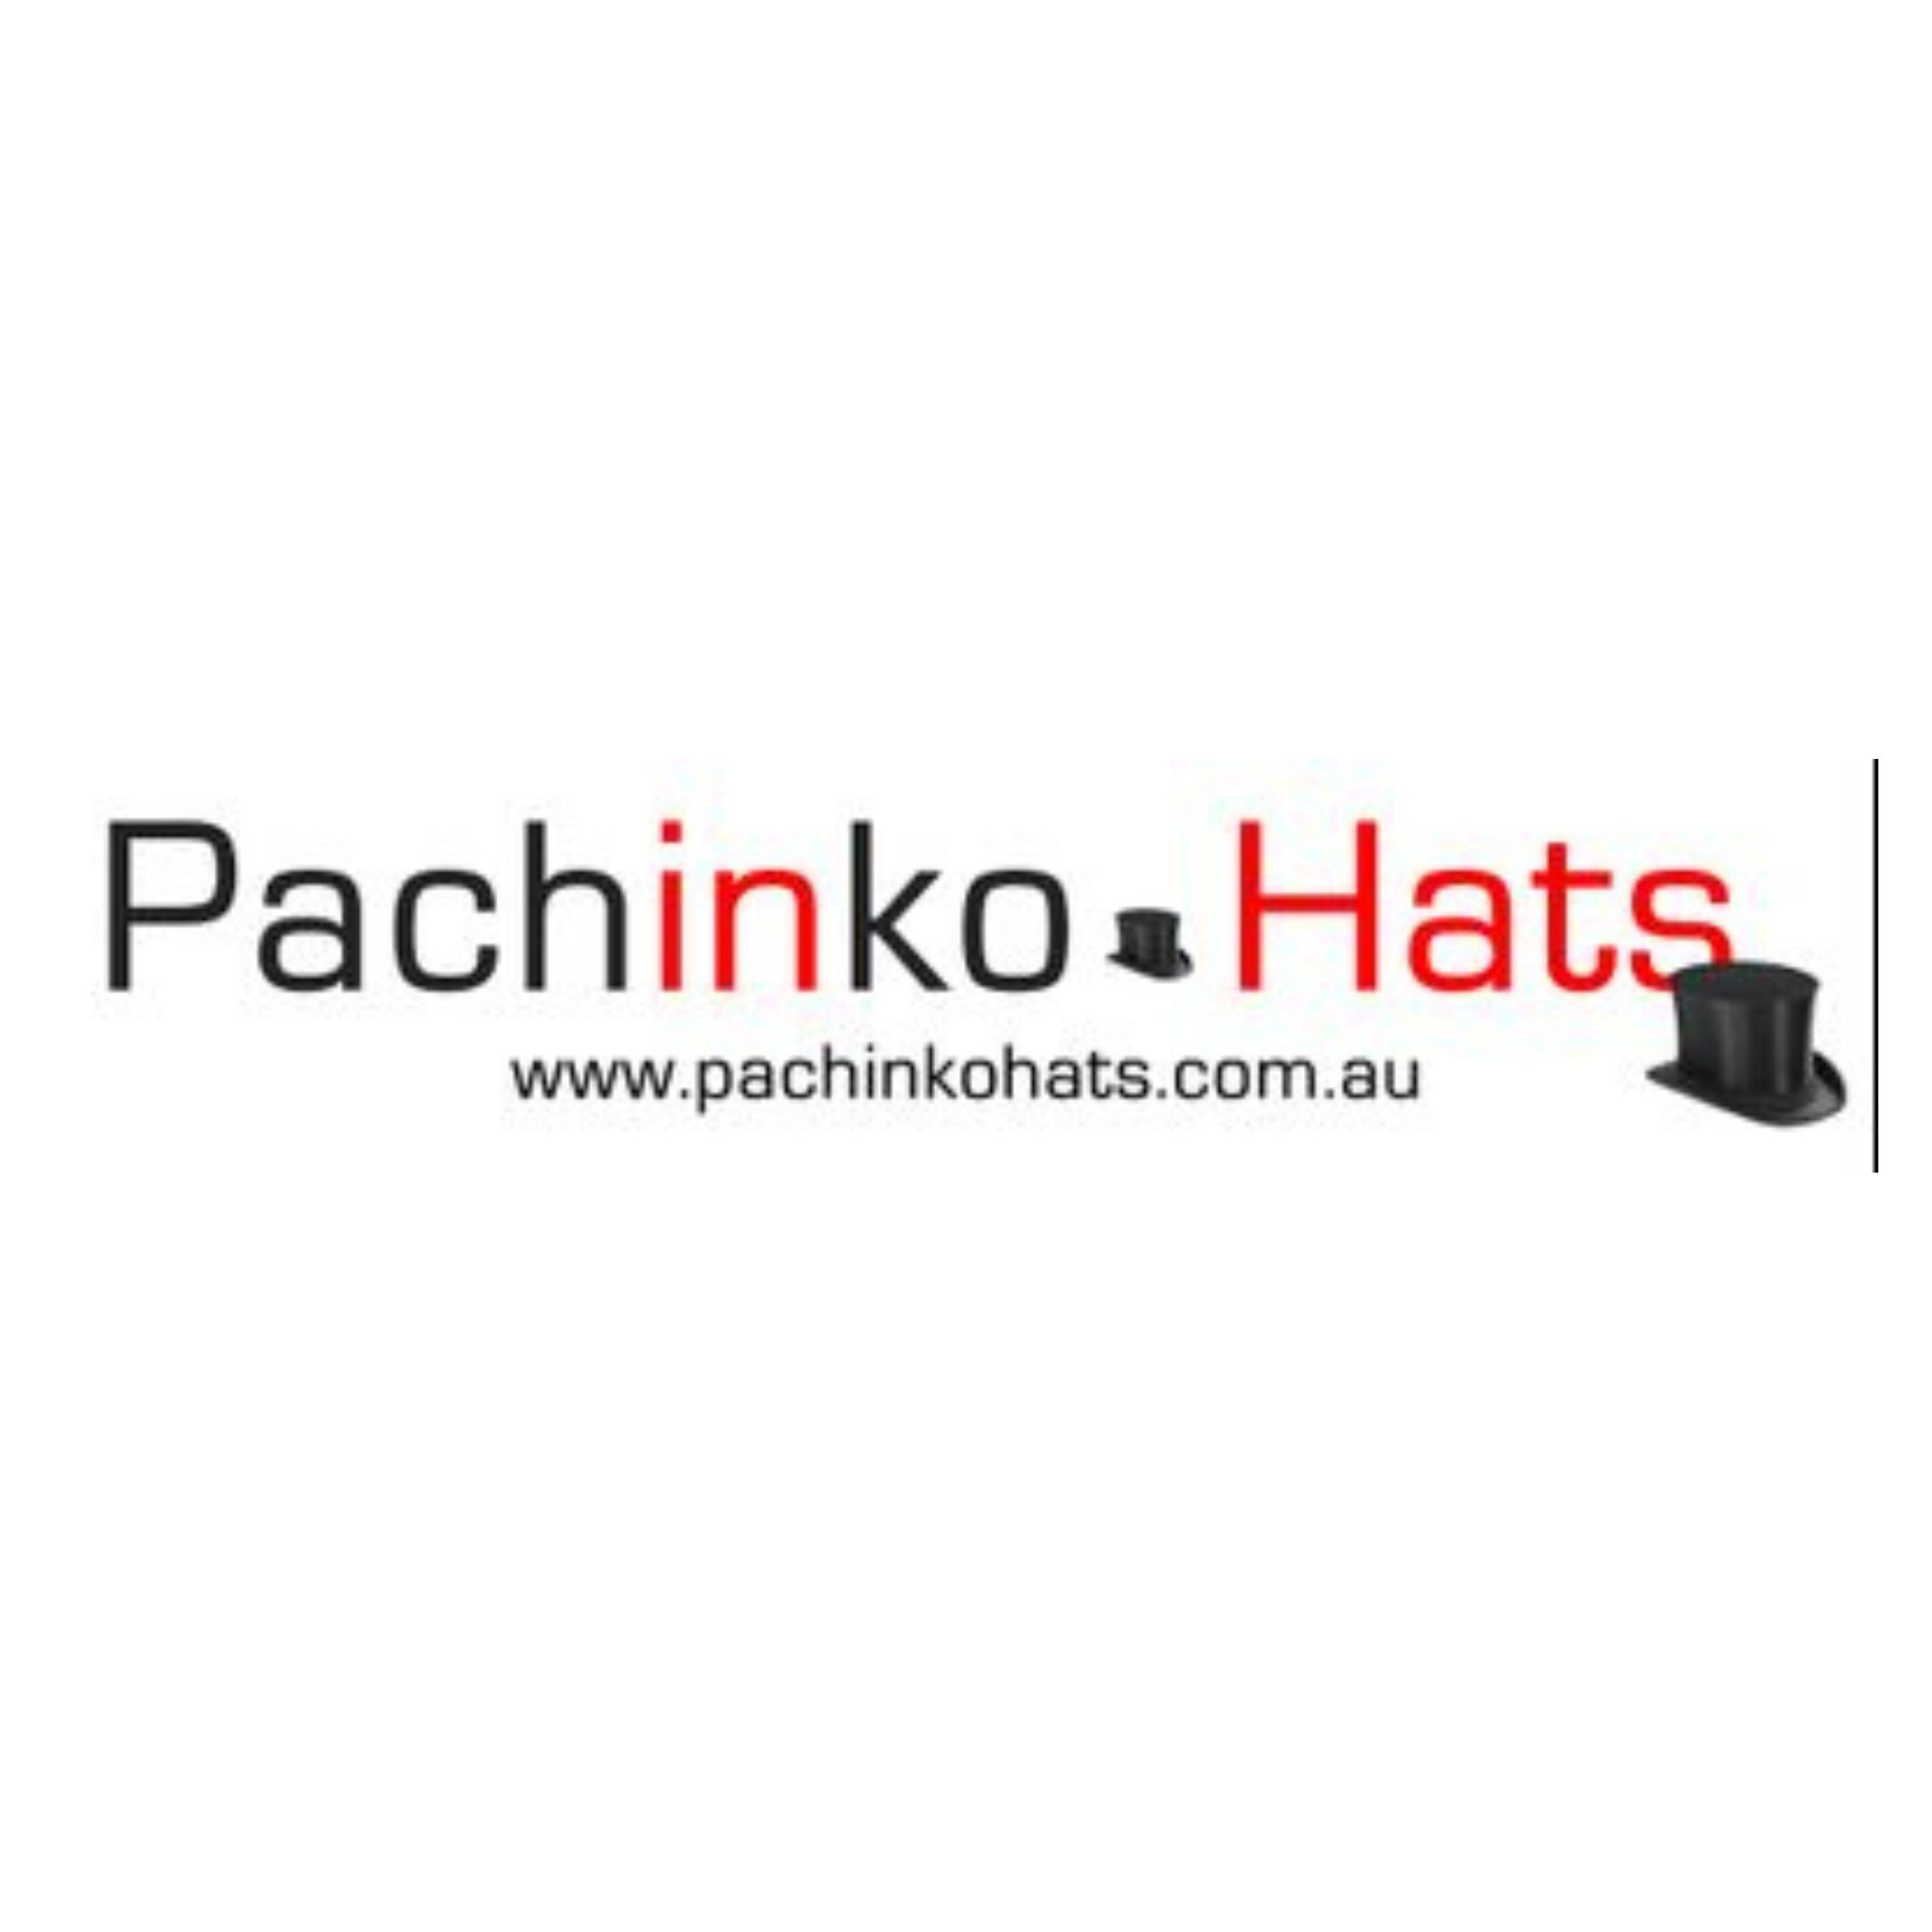 Pachinko-Hats